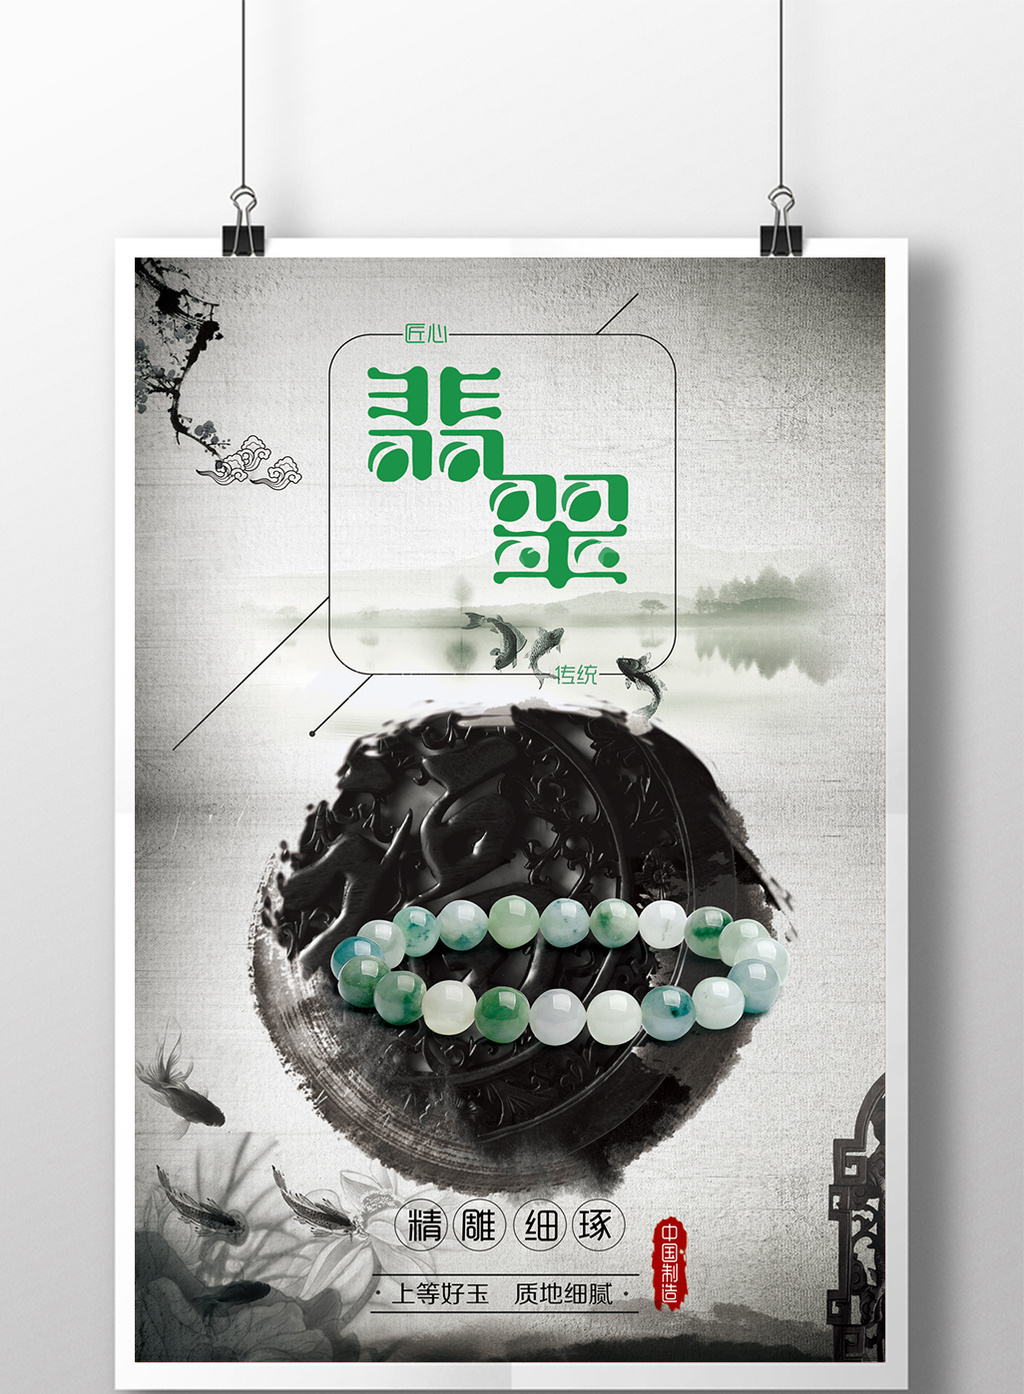 包图 广告设计 海报 > 水墨创意产品翡翠中国风大气海报  上传时间